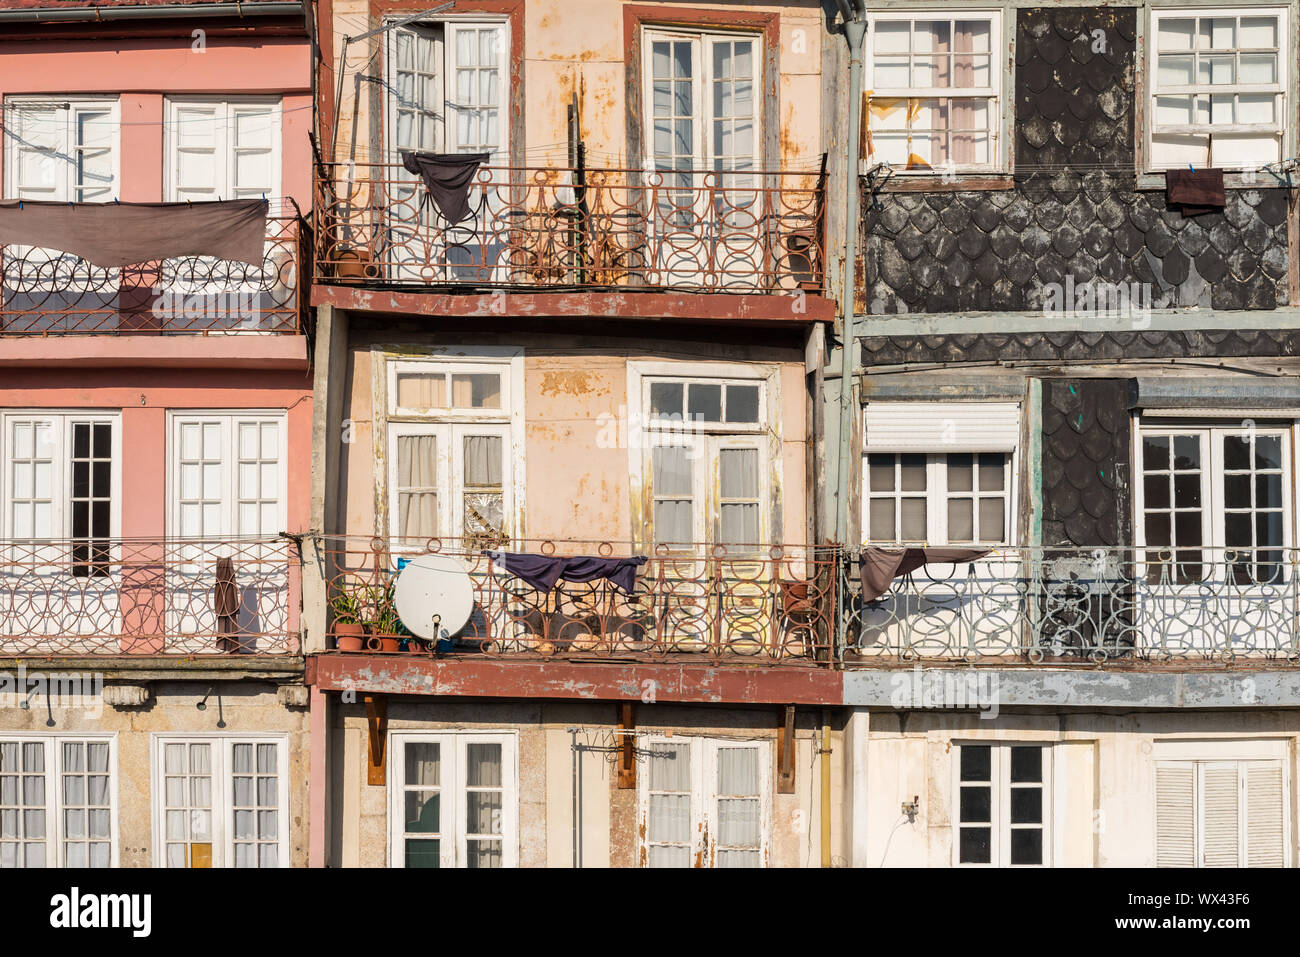 Maisons anciennes typiques de style architectural portugais à Porto Banque D'Images